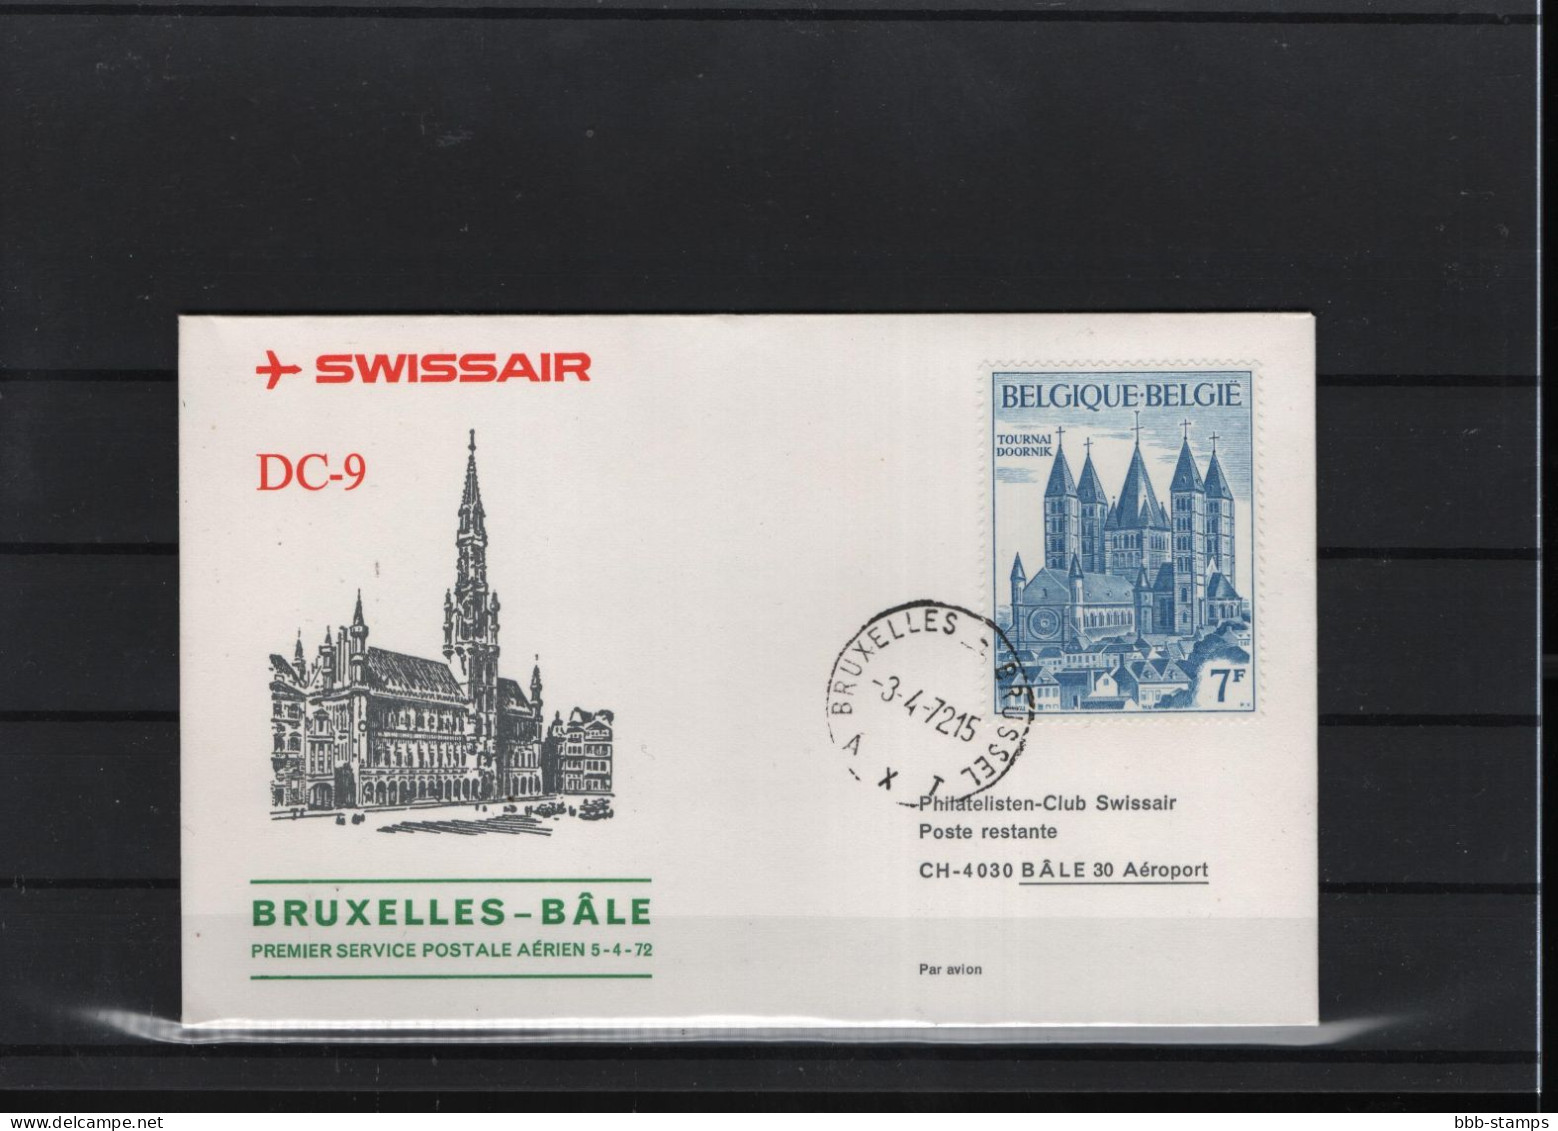 Schweiz Luftpost FFC Swissair  3.4.1972 Brussel - Basel - Primi Voli